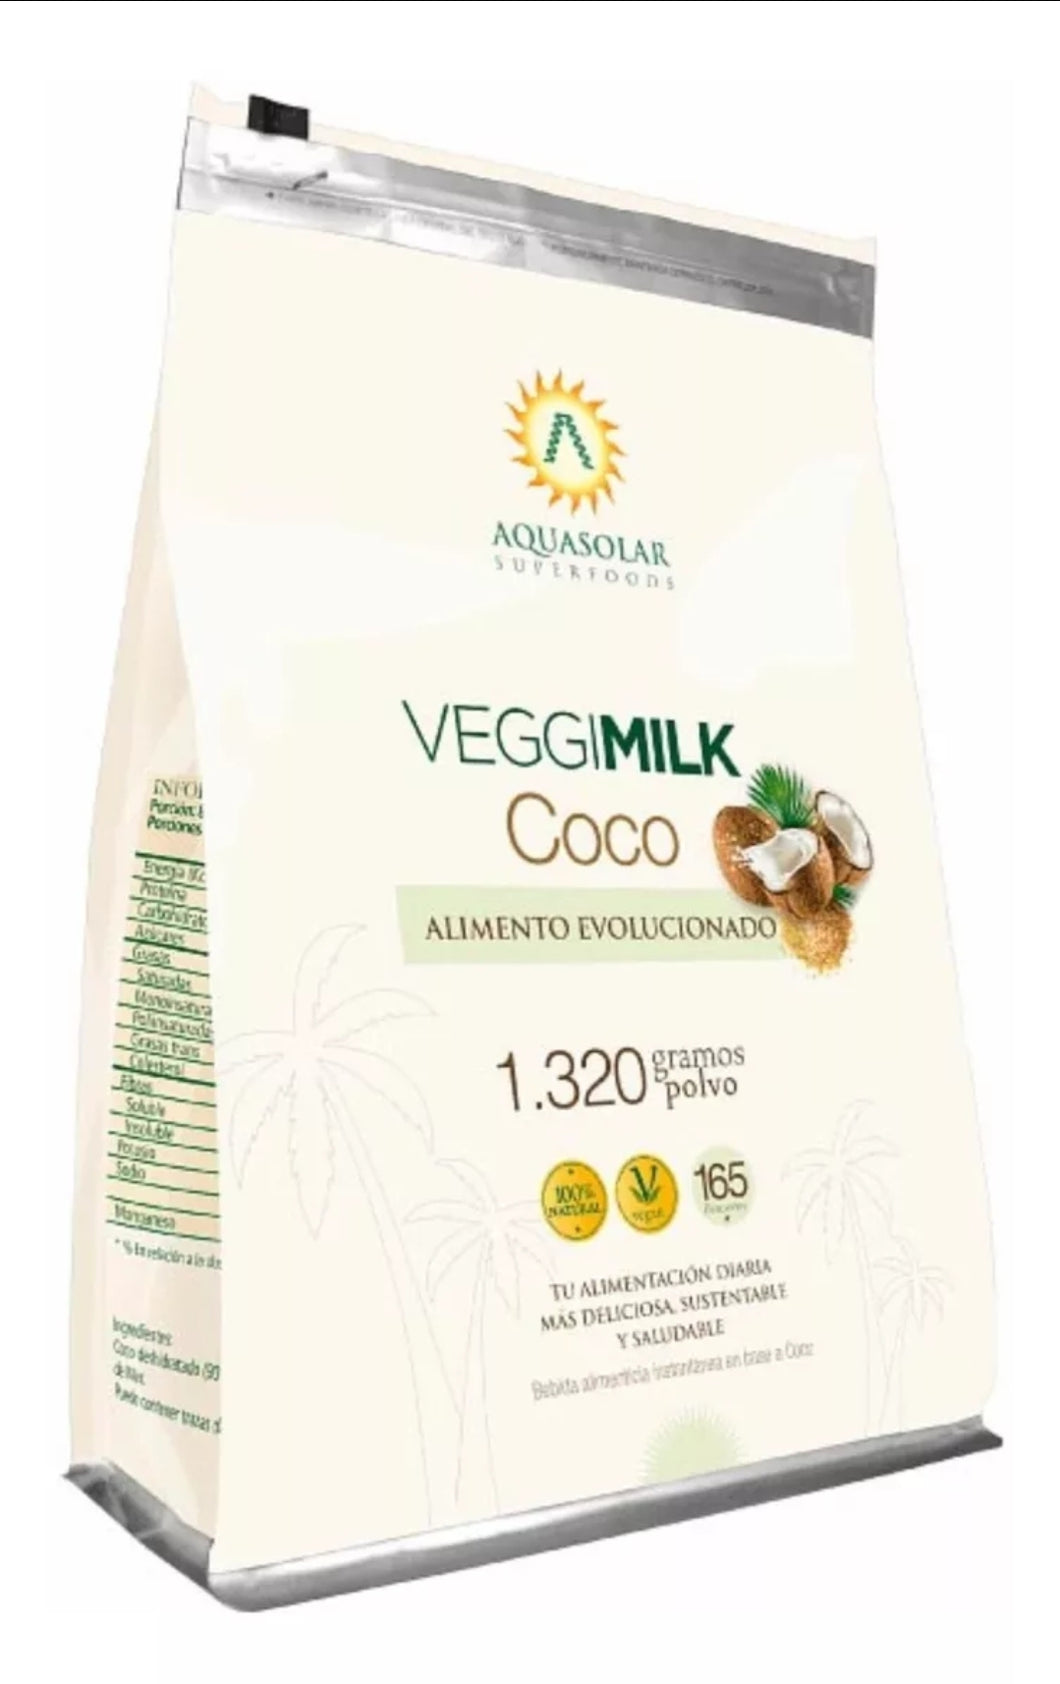 Veggimilk Coco 1.320gr - Aquasolar